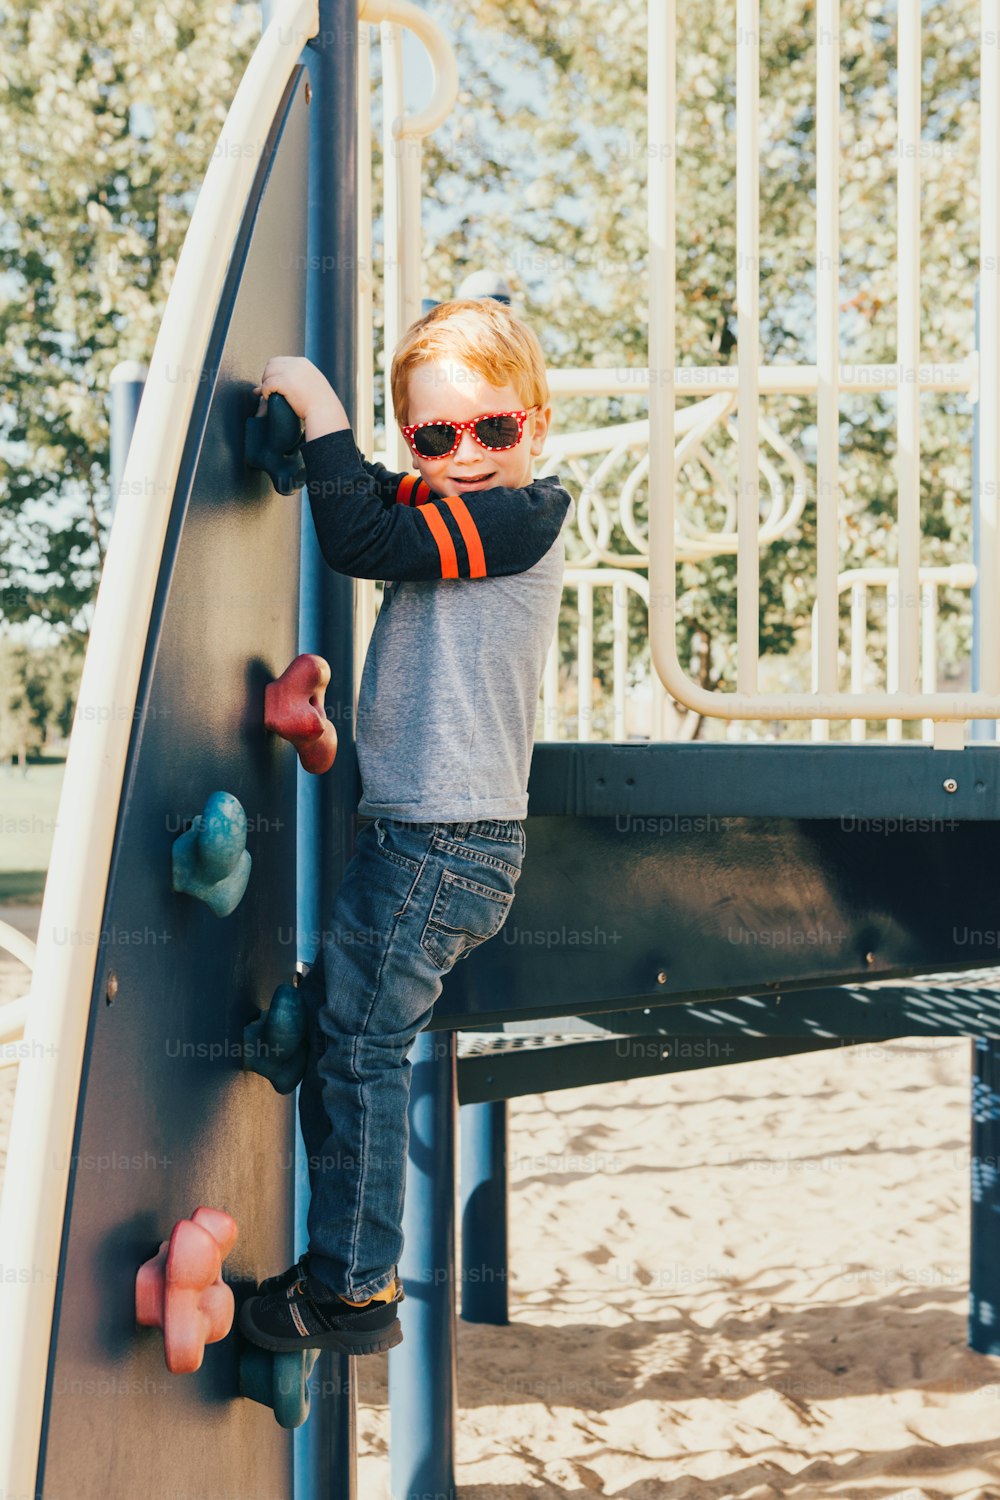 Menino feliz sorridente da pré-escola em óculos escuros escalando parede de rocha no playground do lado de fora no dia de verão. Conceito de estilo de vida feliz na infância. Atividade sazonal ao ar livre para crianças.